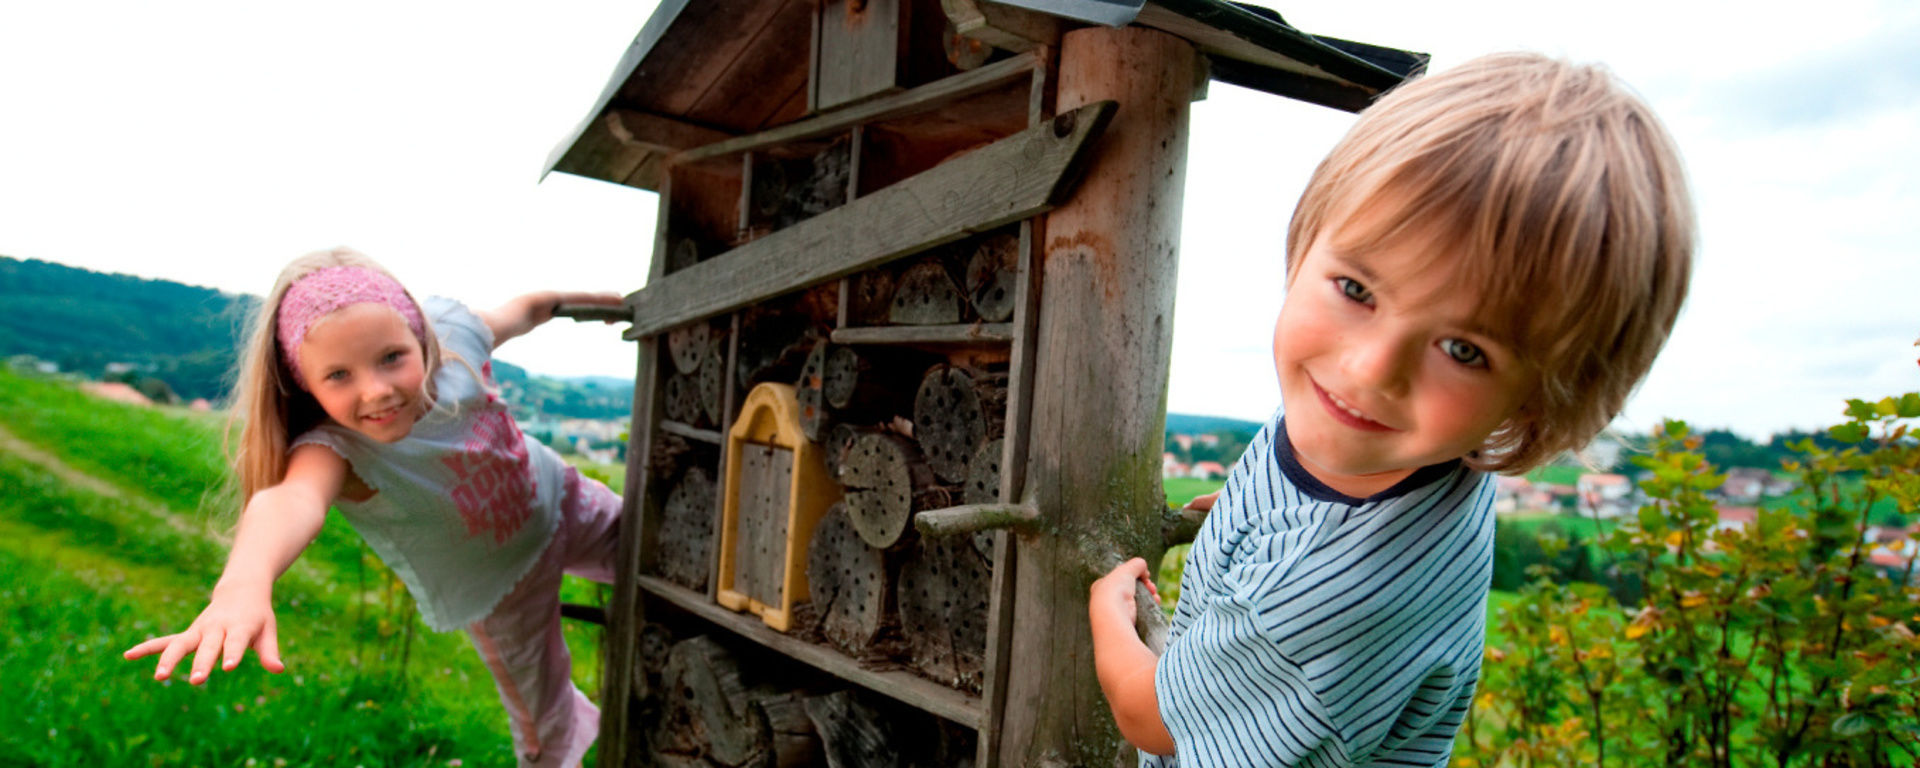 Kinder freuen sich über ein Insektenhotel auf einer Wiese